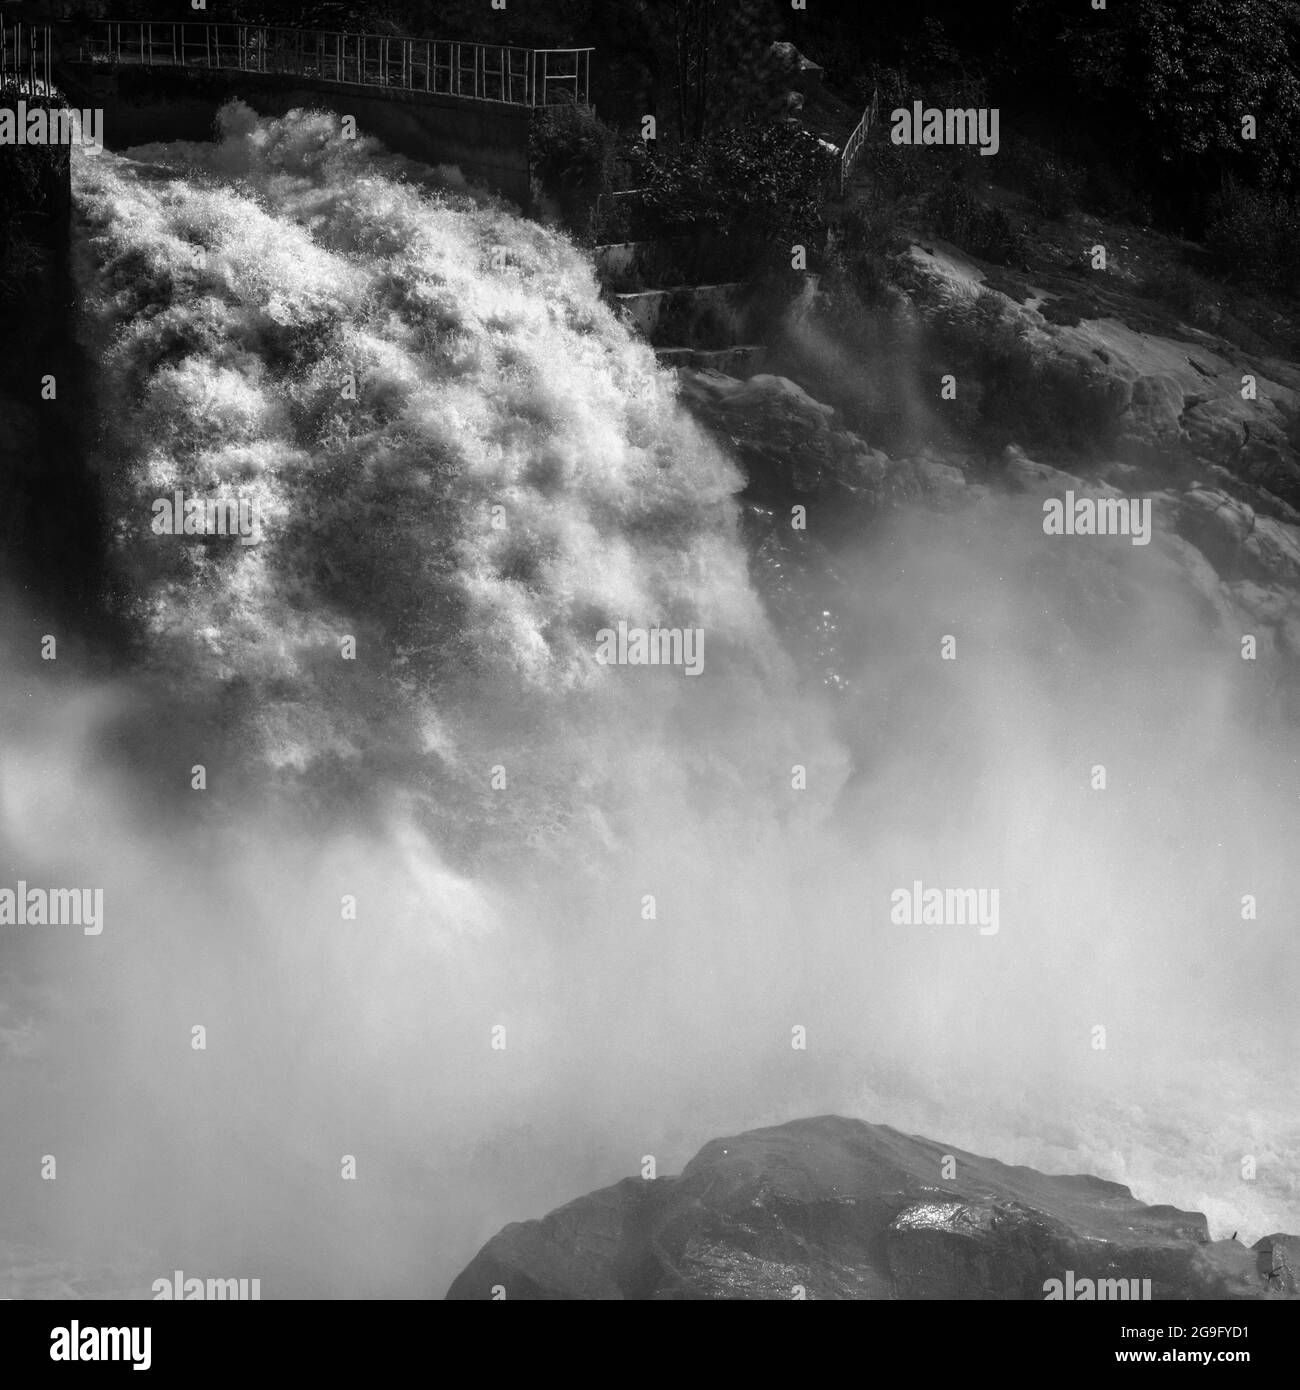 Schwarz-weiß-Aufnahme einer riesigen Wassermenge, die aus einem Tunnel kommt Stockfoto